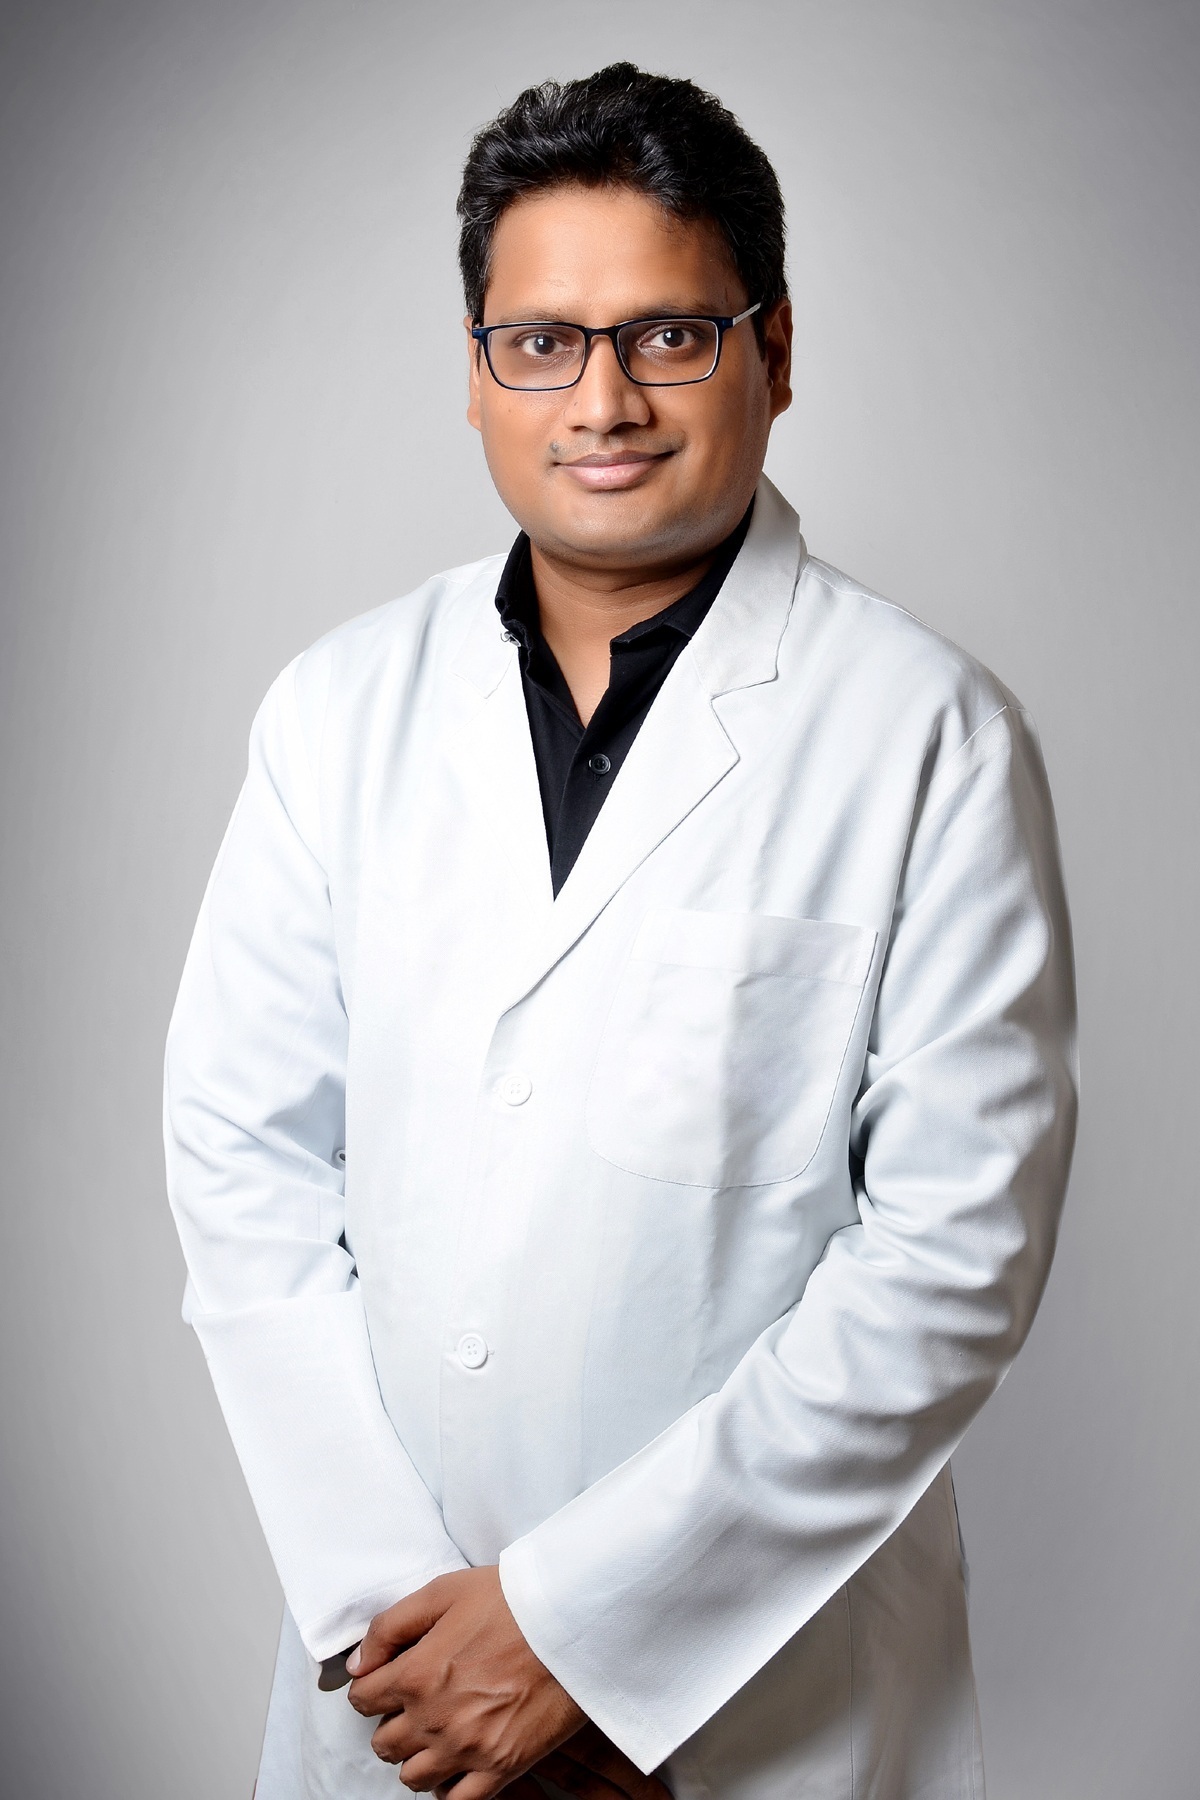 Rinkesh Kumar Bansal博士